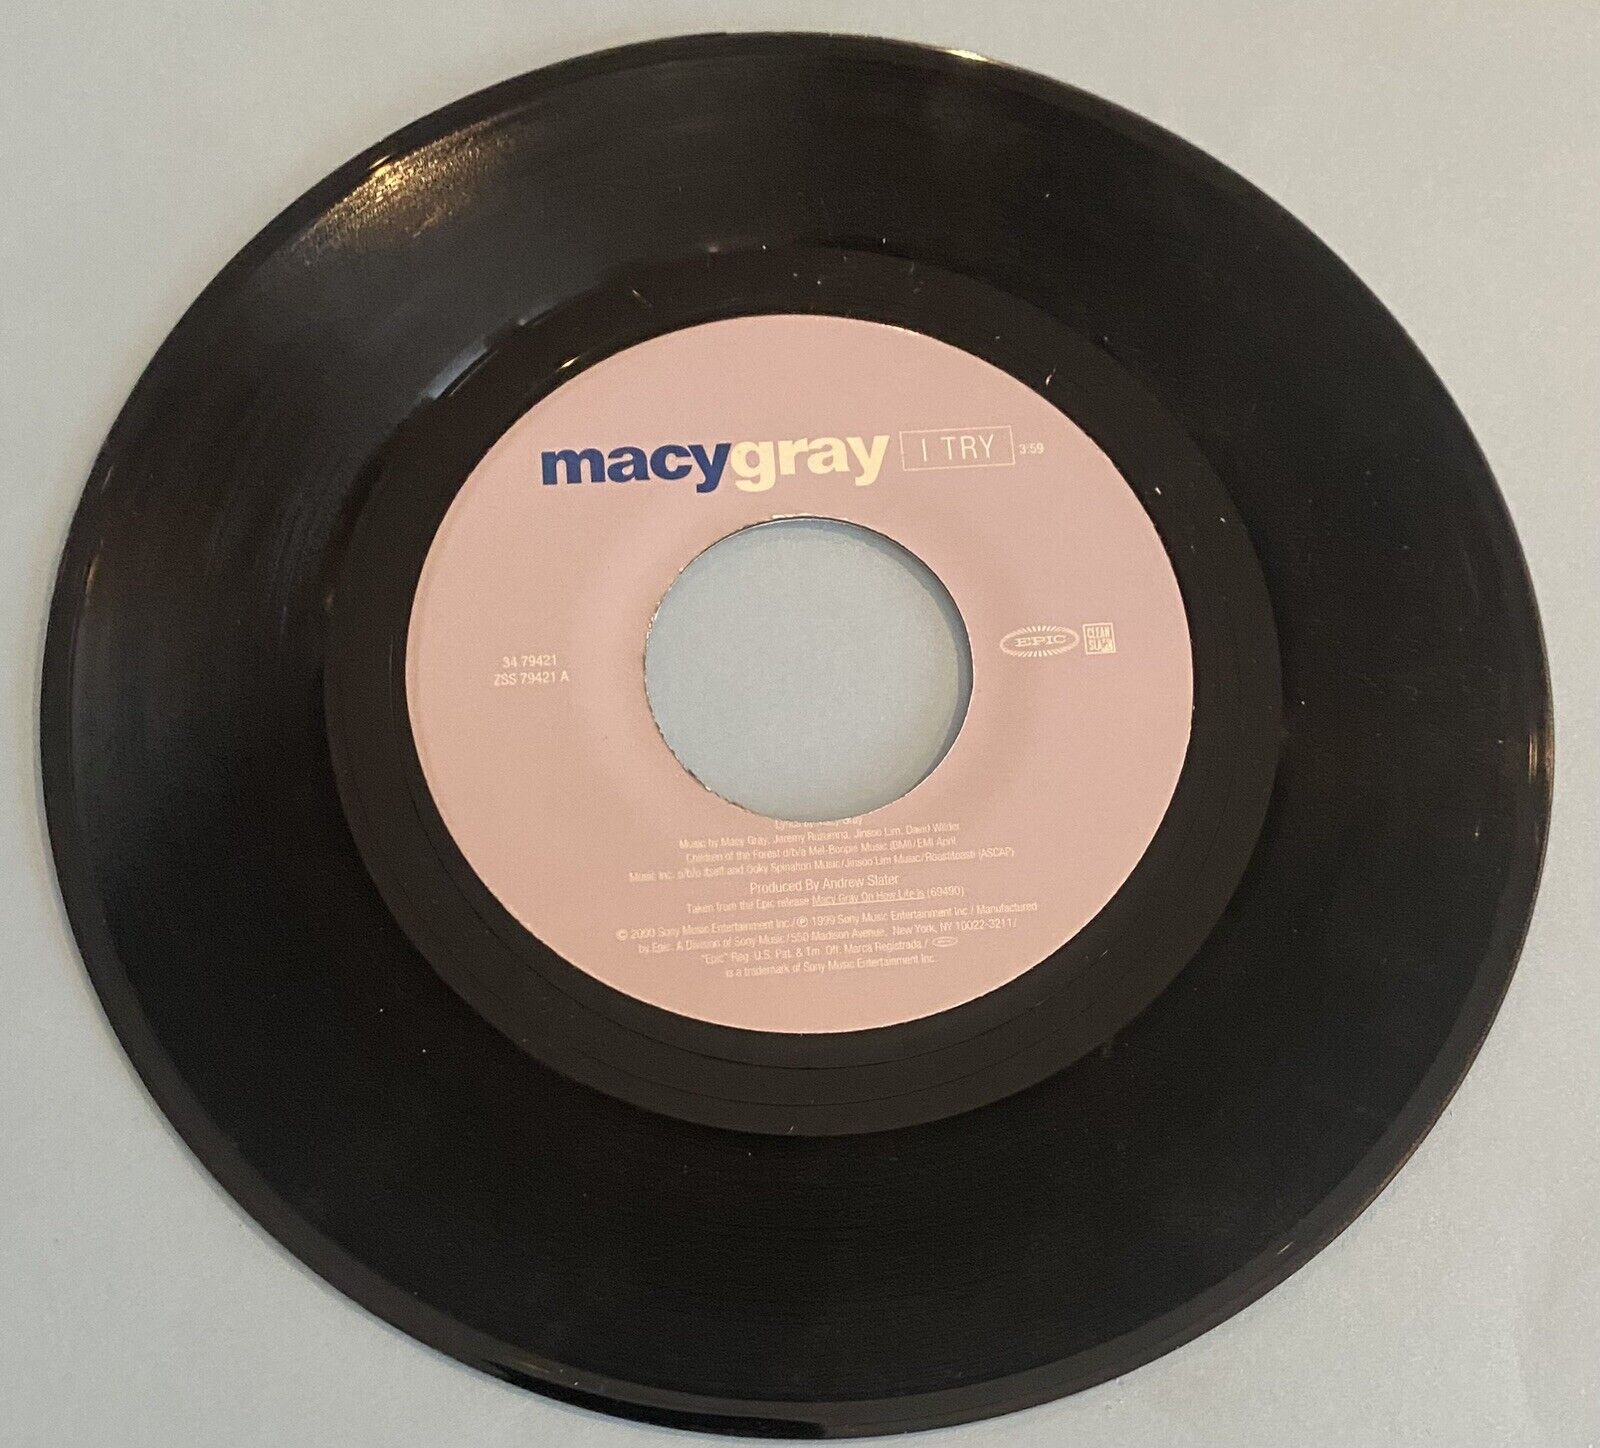 Macy Gray " I Try " 45 vinyl record